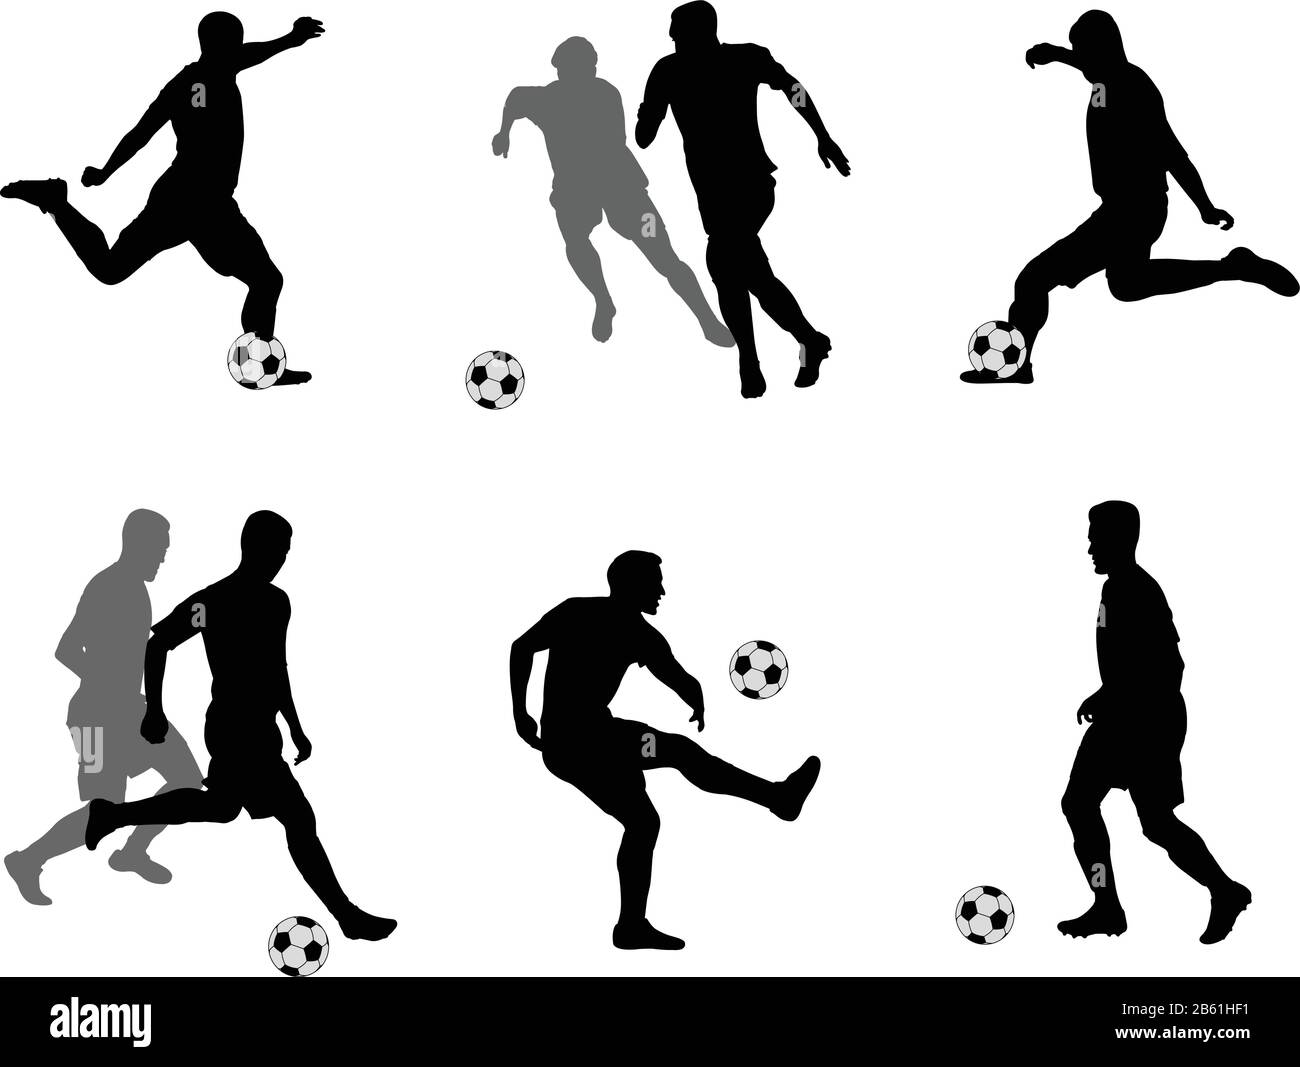 Colección de siluetas de jugadores de fútbol - vector Ilustración del Vector